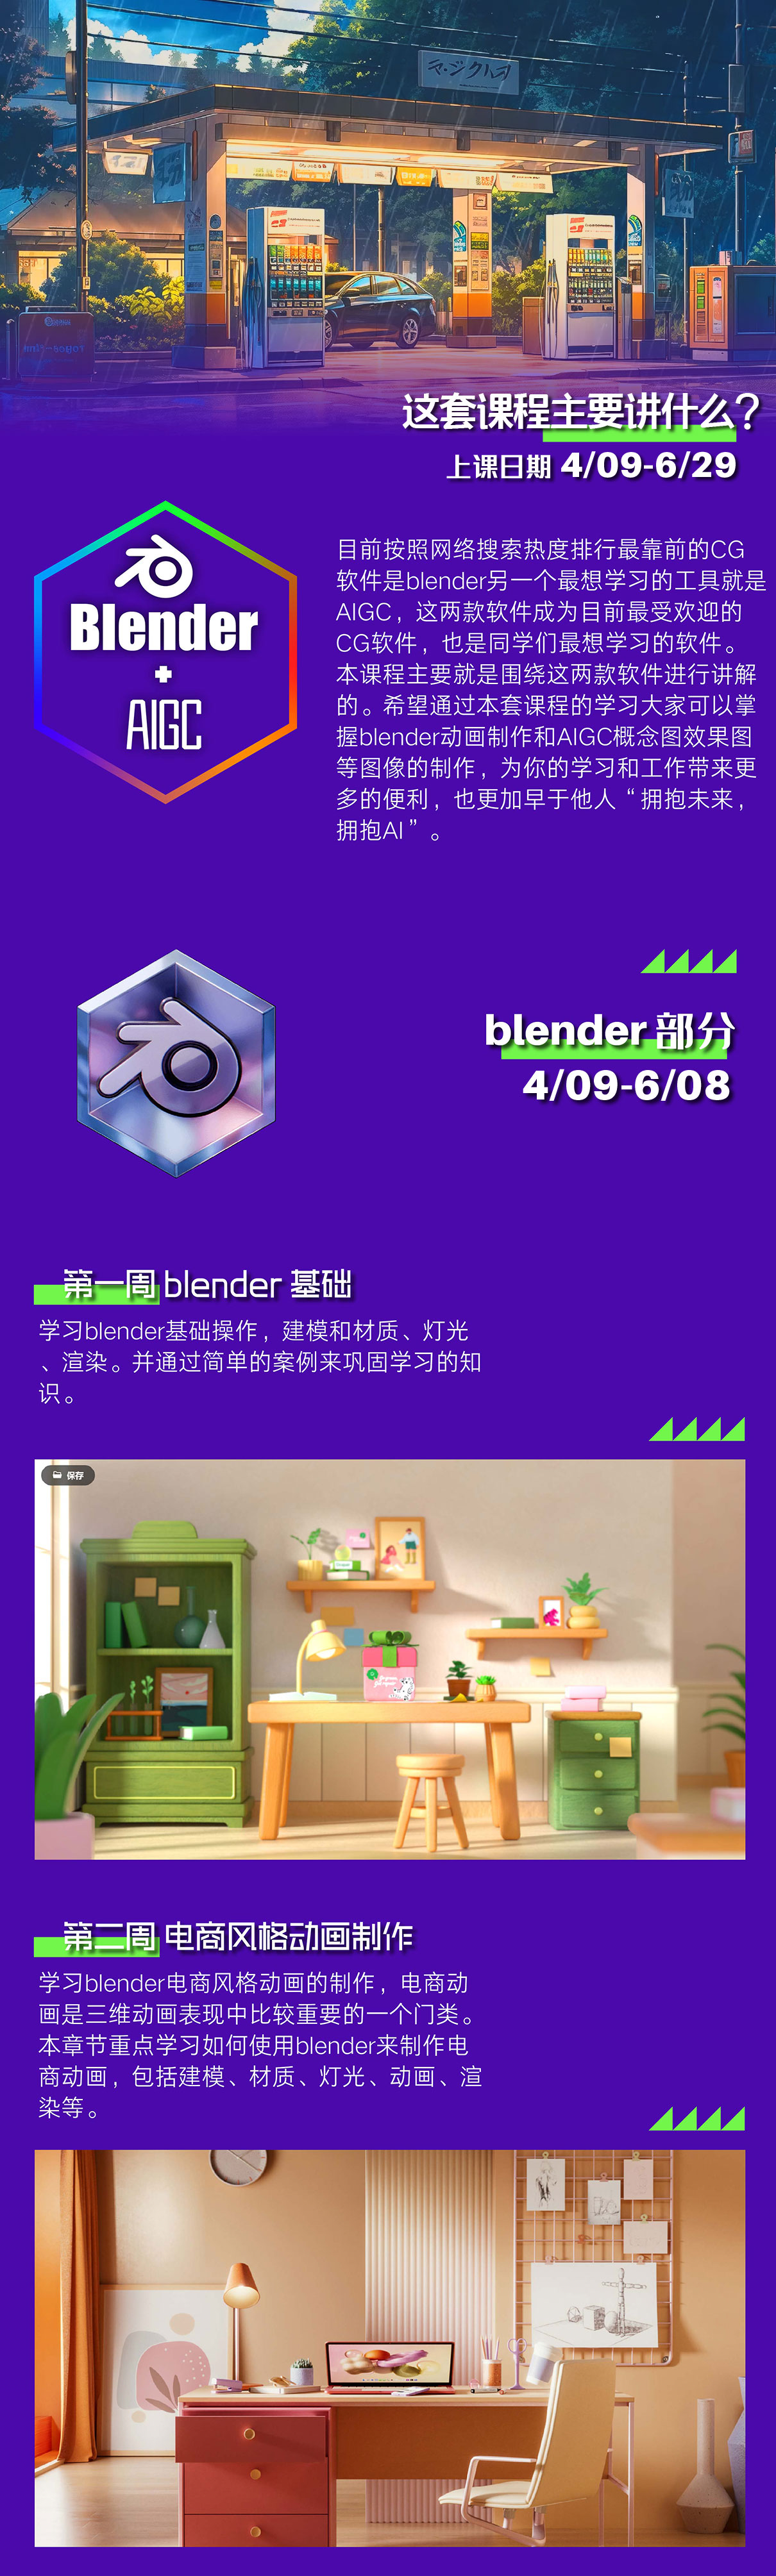 blender+AIGC-01.jpg